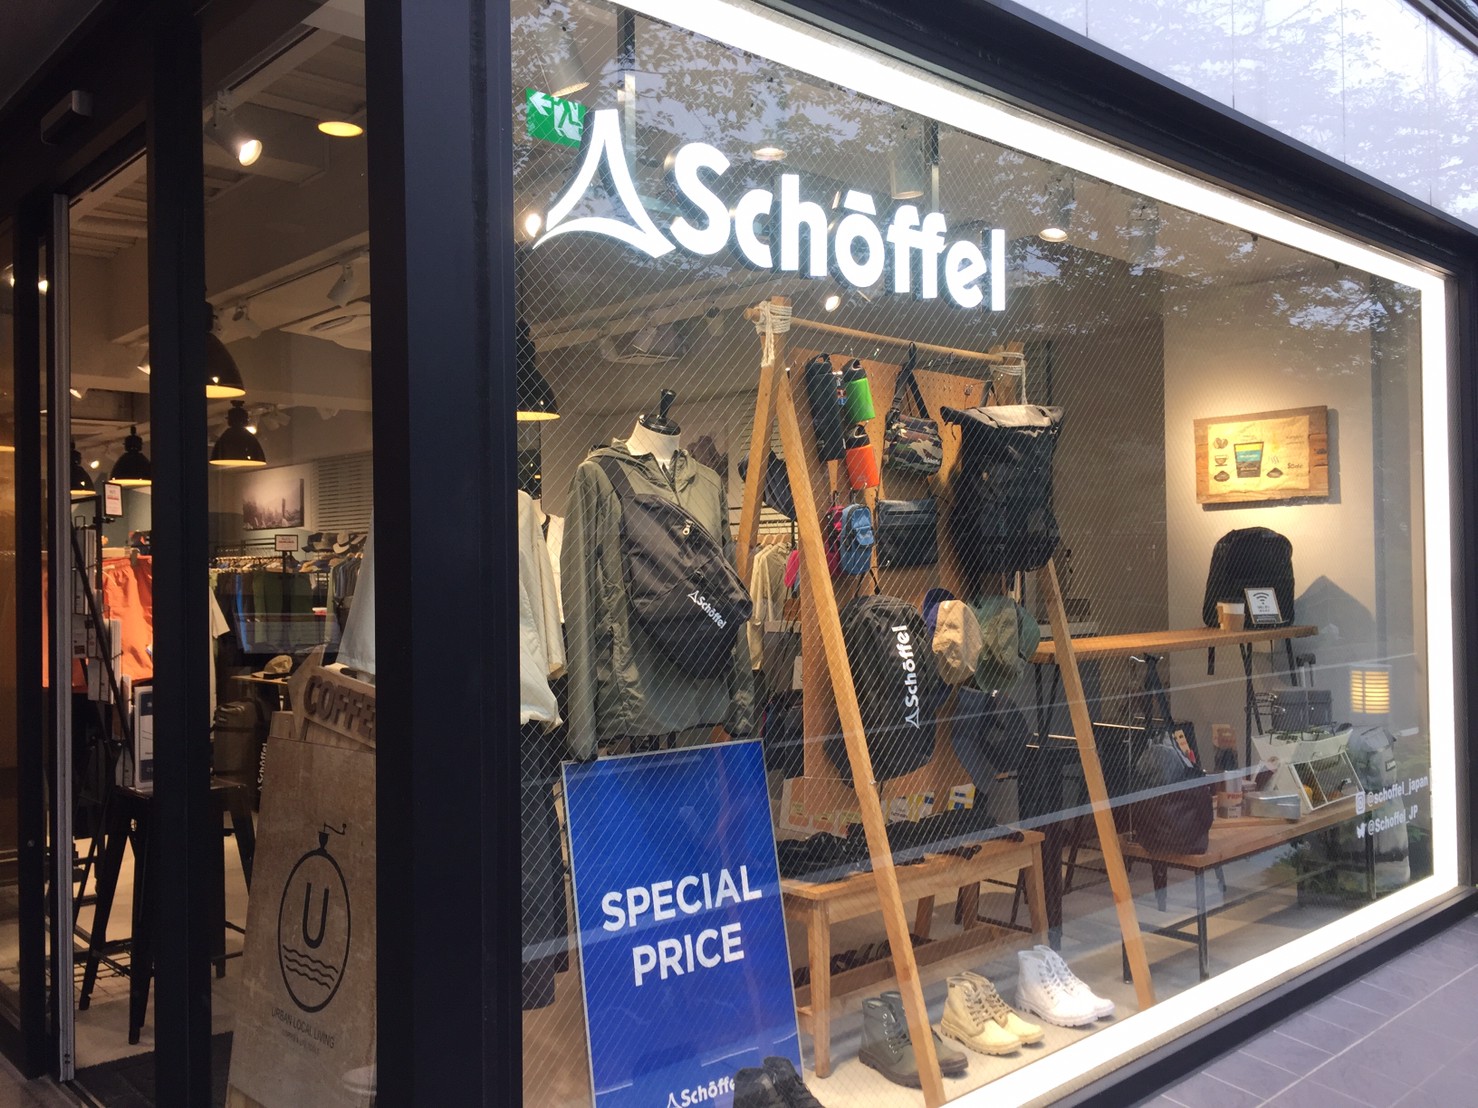 Schoffel ショッフェル 中目黒 なんでも揃うドイツ発の老舗アウトドアショップ ナカメディア